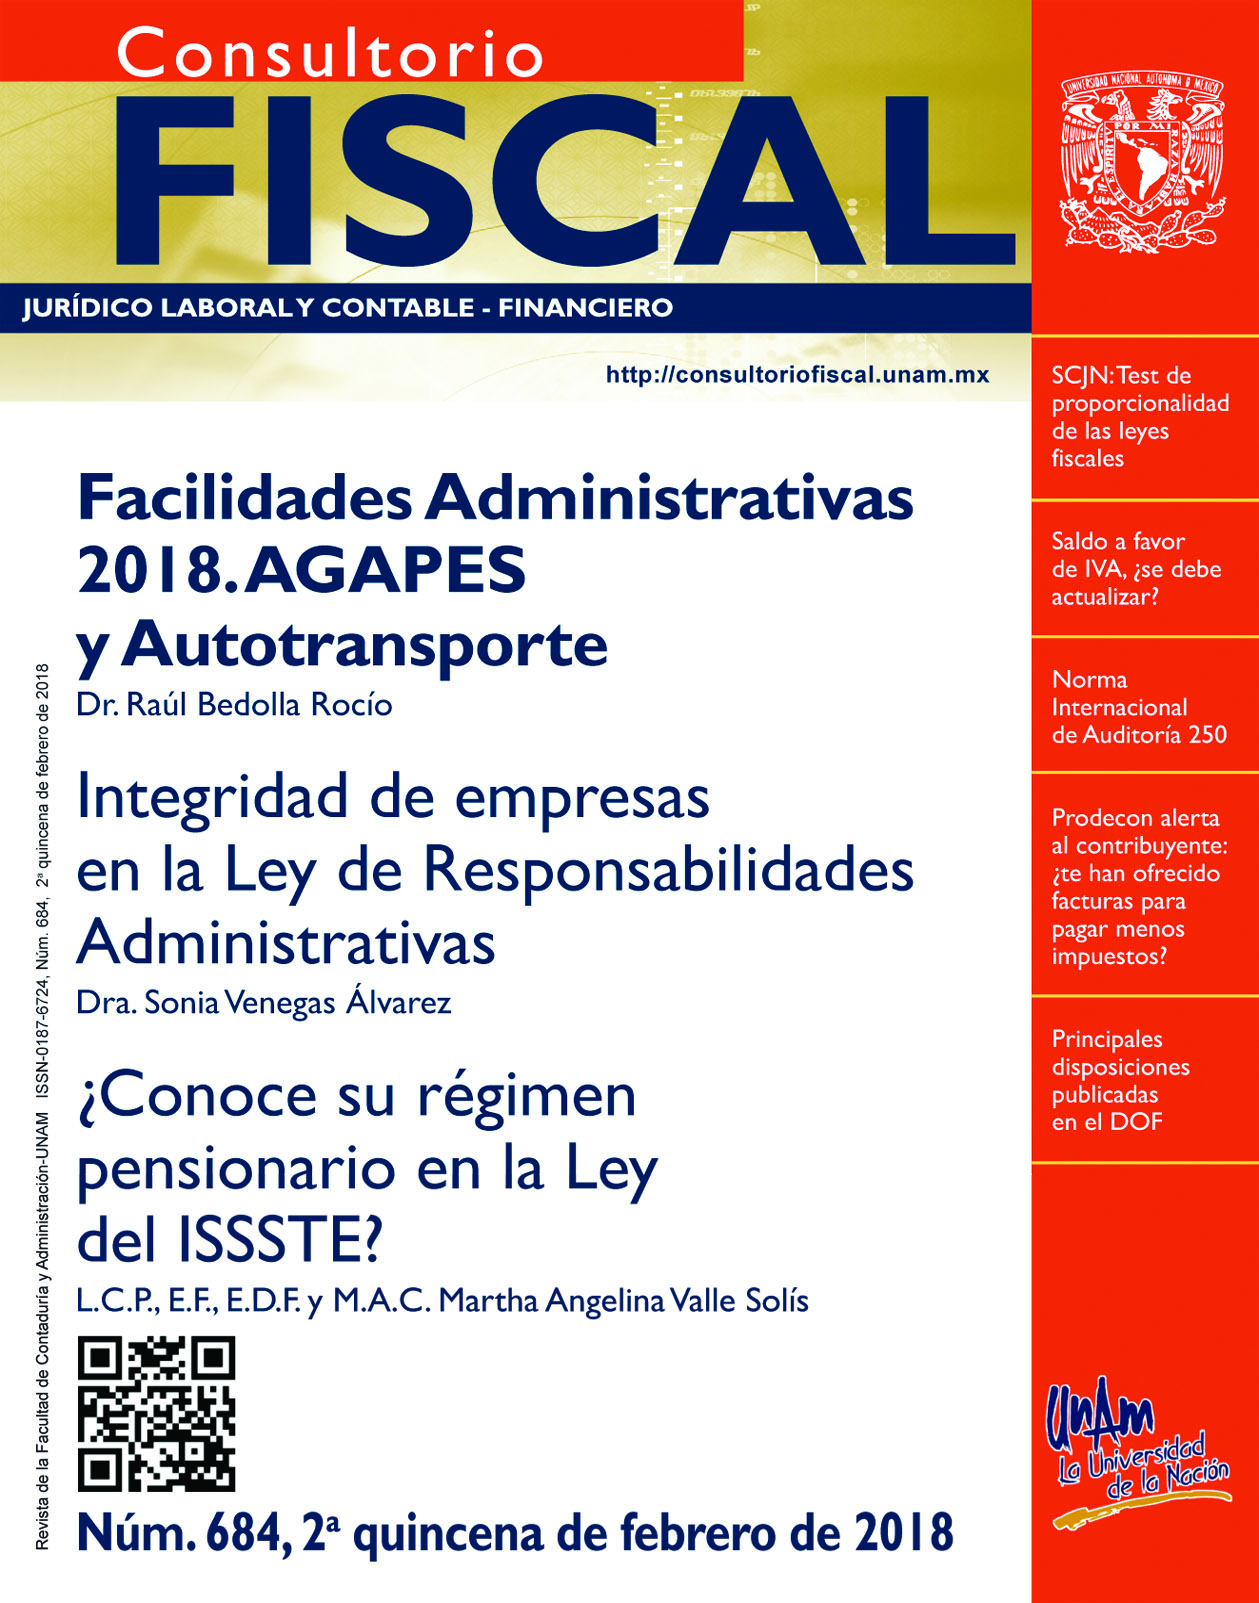 Facilidades Administrativas 2018. AGAPES y Autotransporte